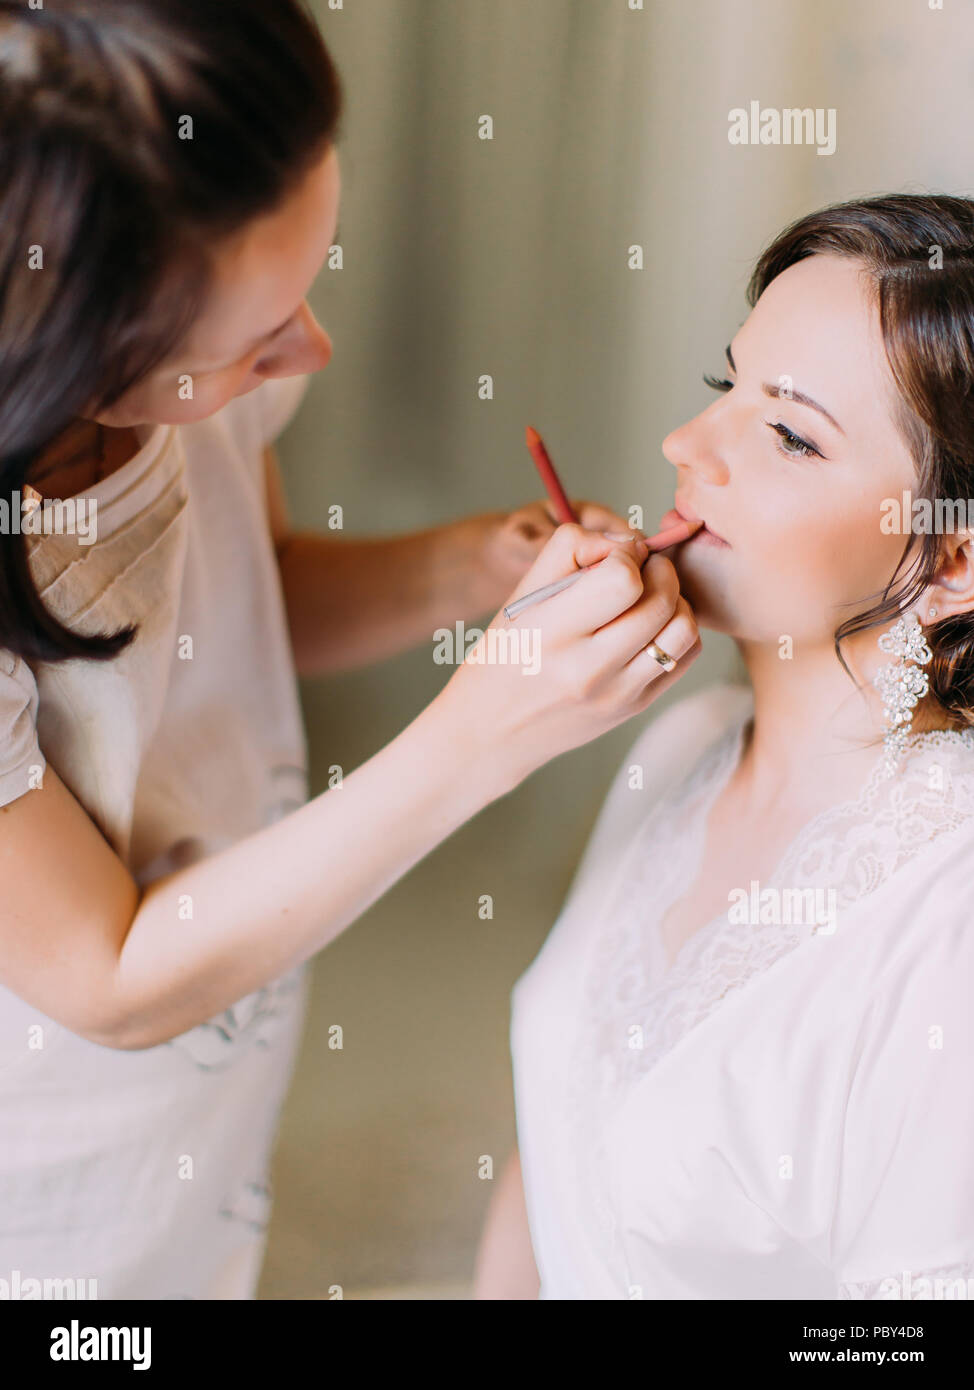 La vue verticale de l'womanmakeup ce faisant l'artiste de maquillage pour la mariée Banque D'Images